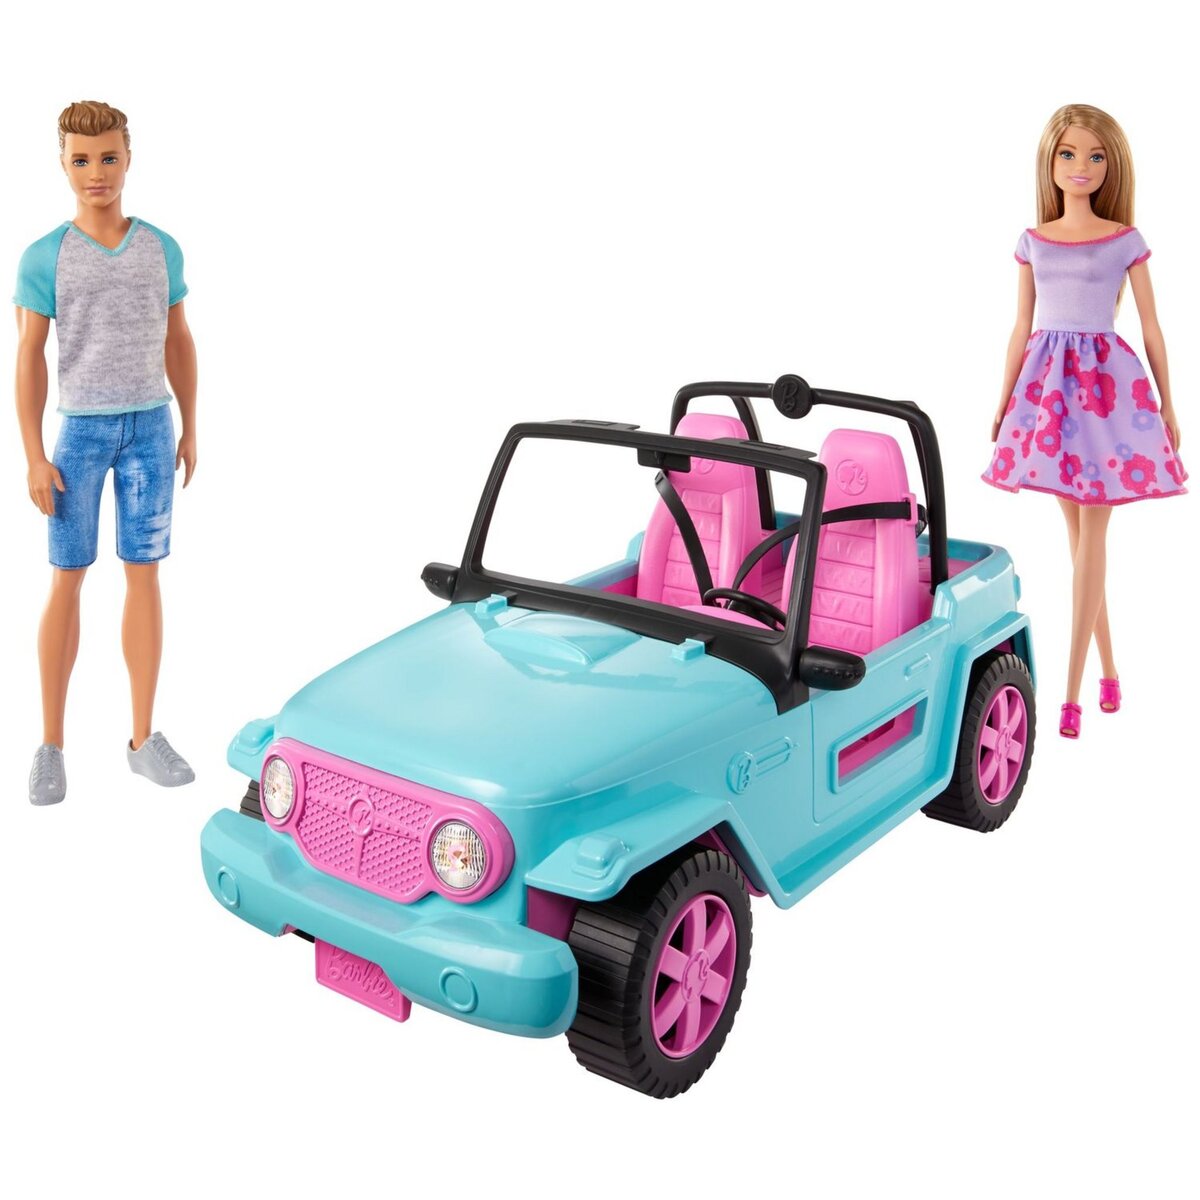 MATTEL Barbie et Ken Beach Cruiser